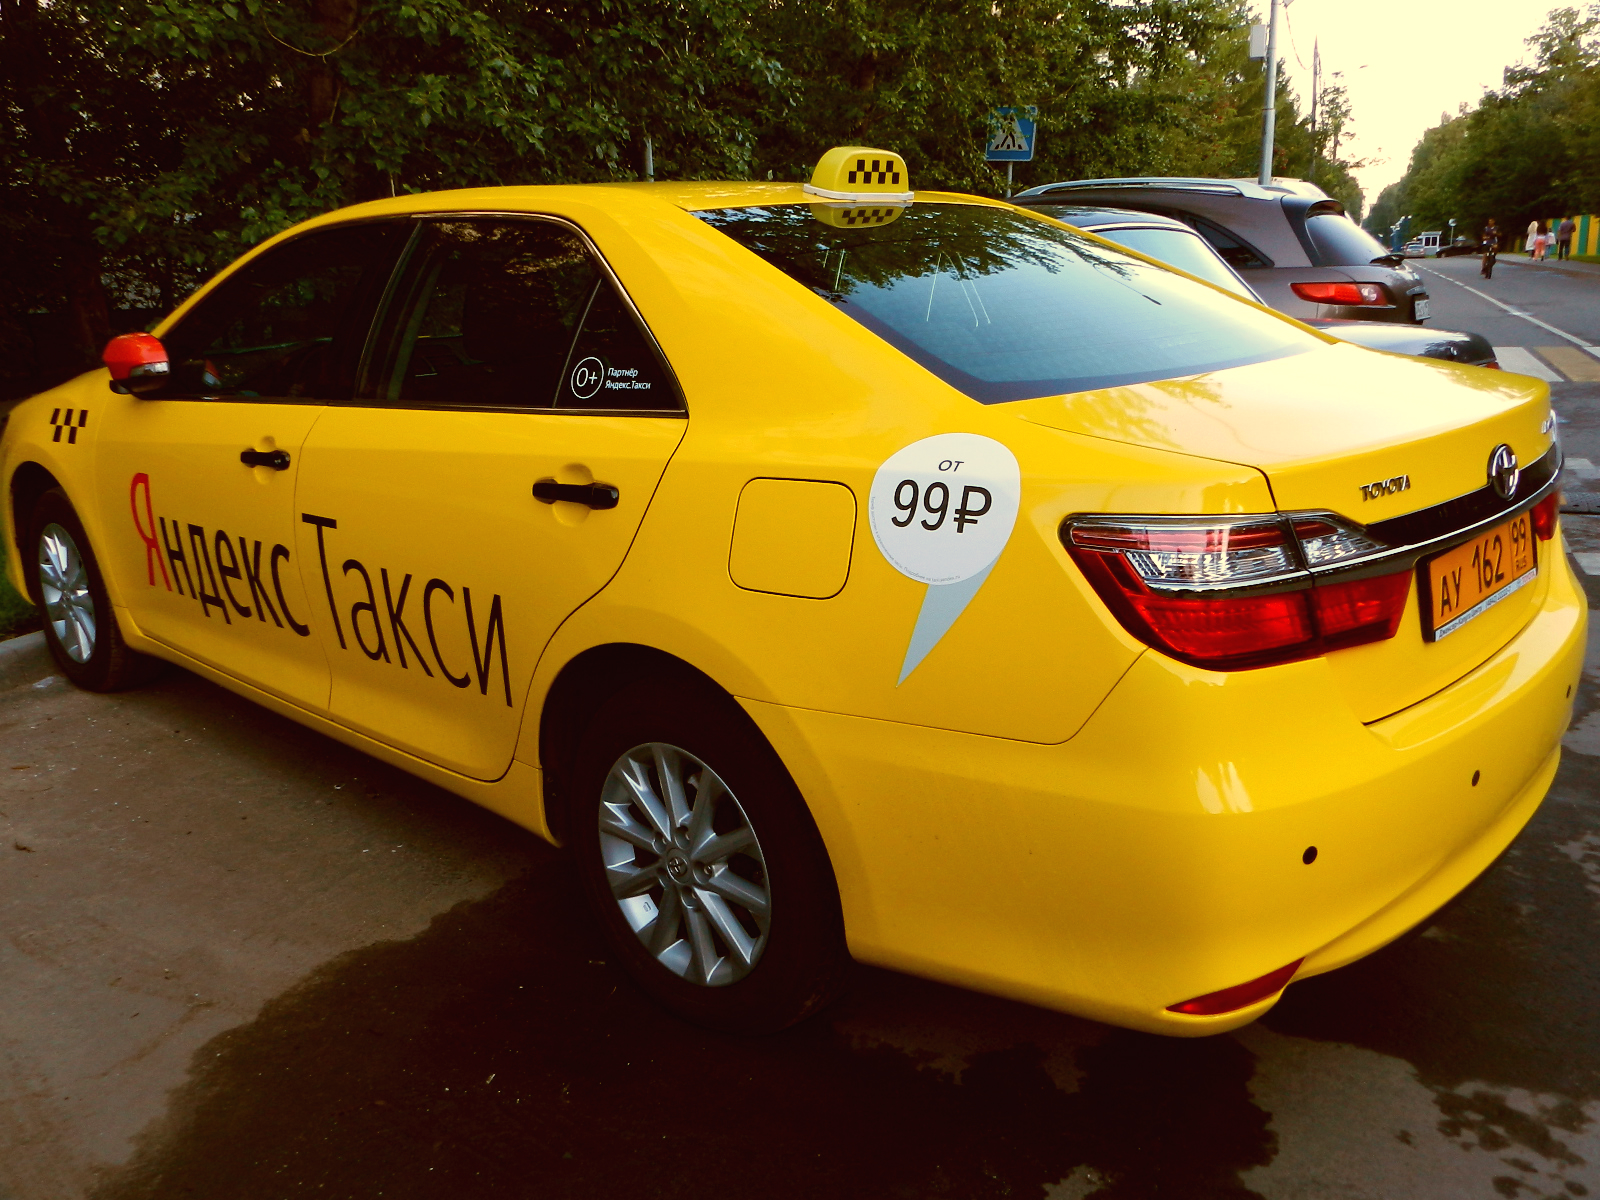 pro-zabastovku-protiv-yandex-taxi-i-passazhirov